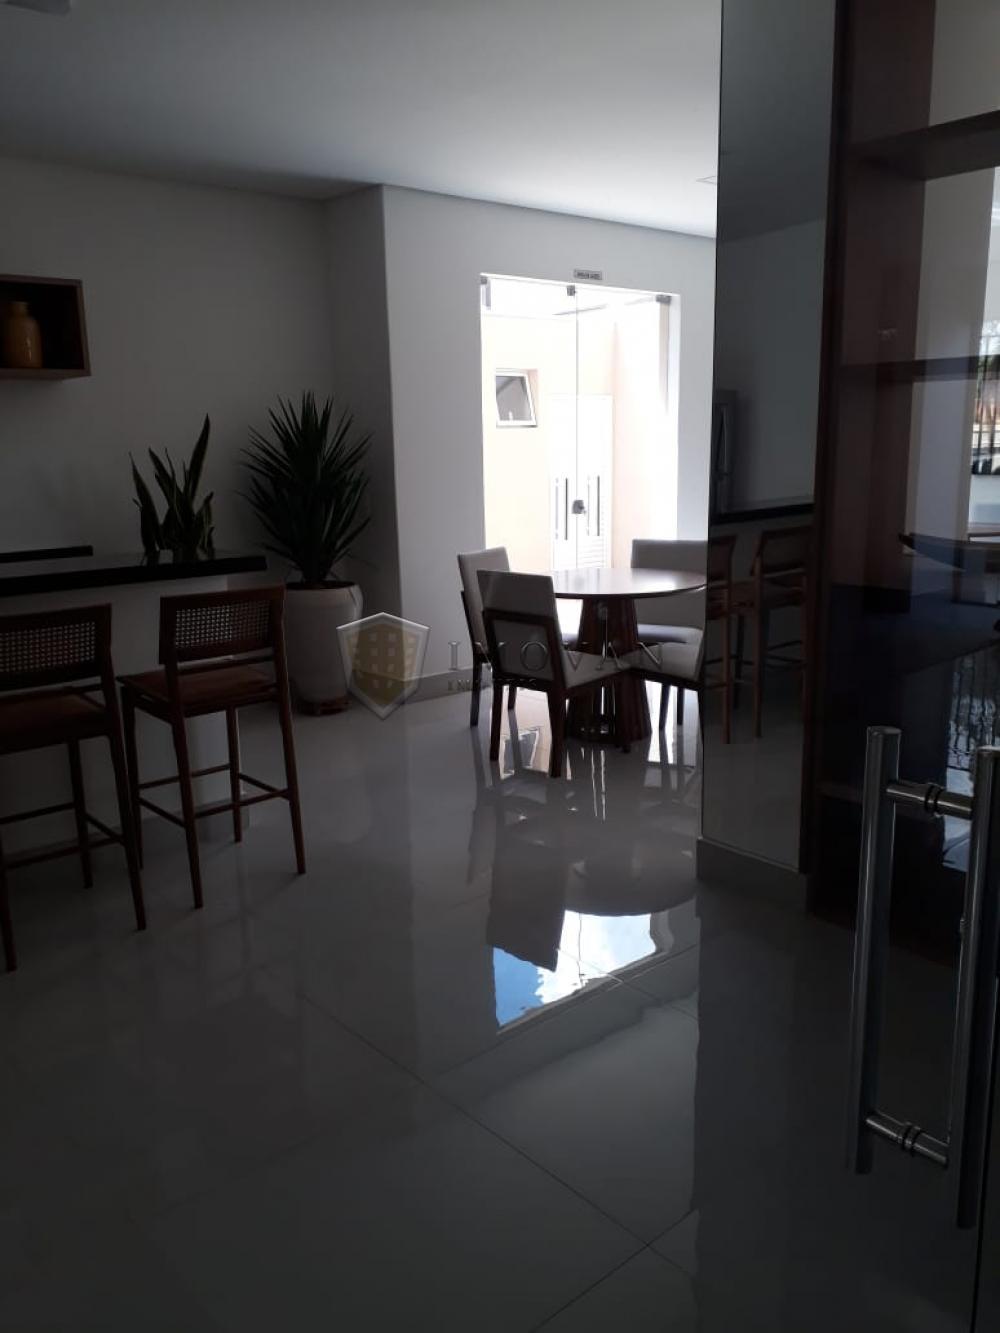 Comprar Apartamento / Padrão em Ribeirão Preto R$ 450.000,00 - Foto 10